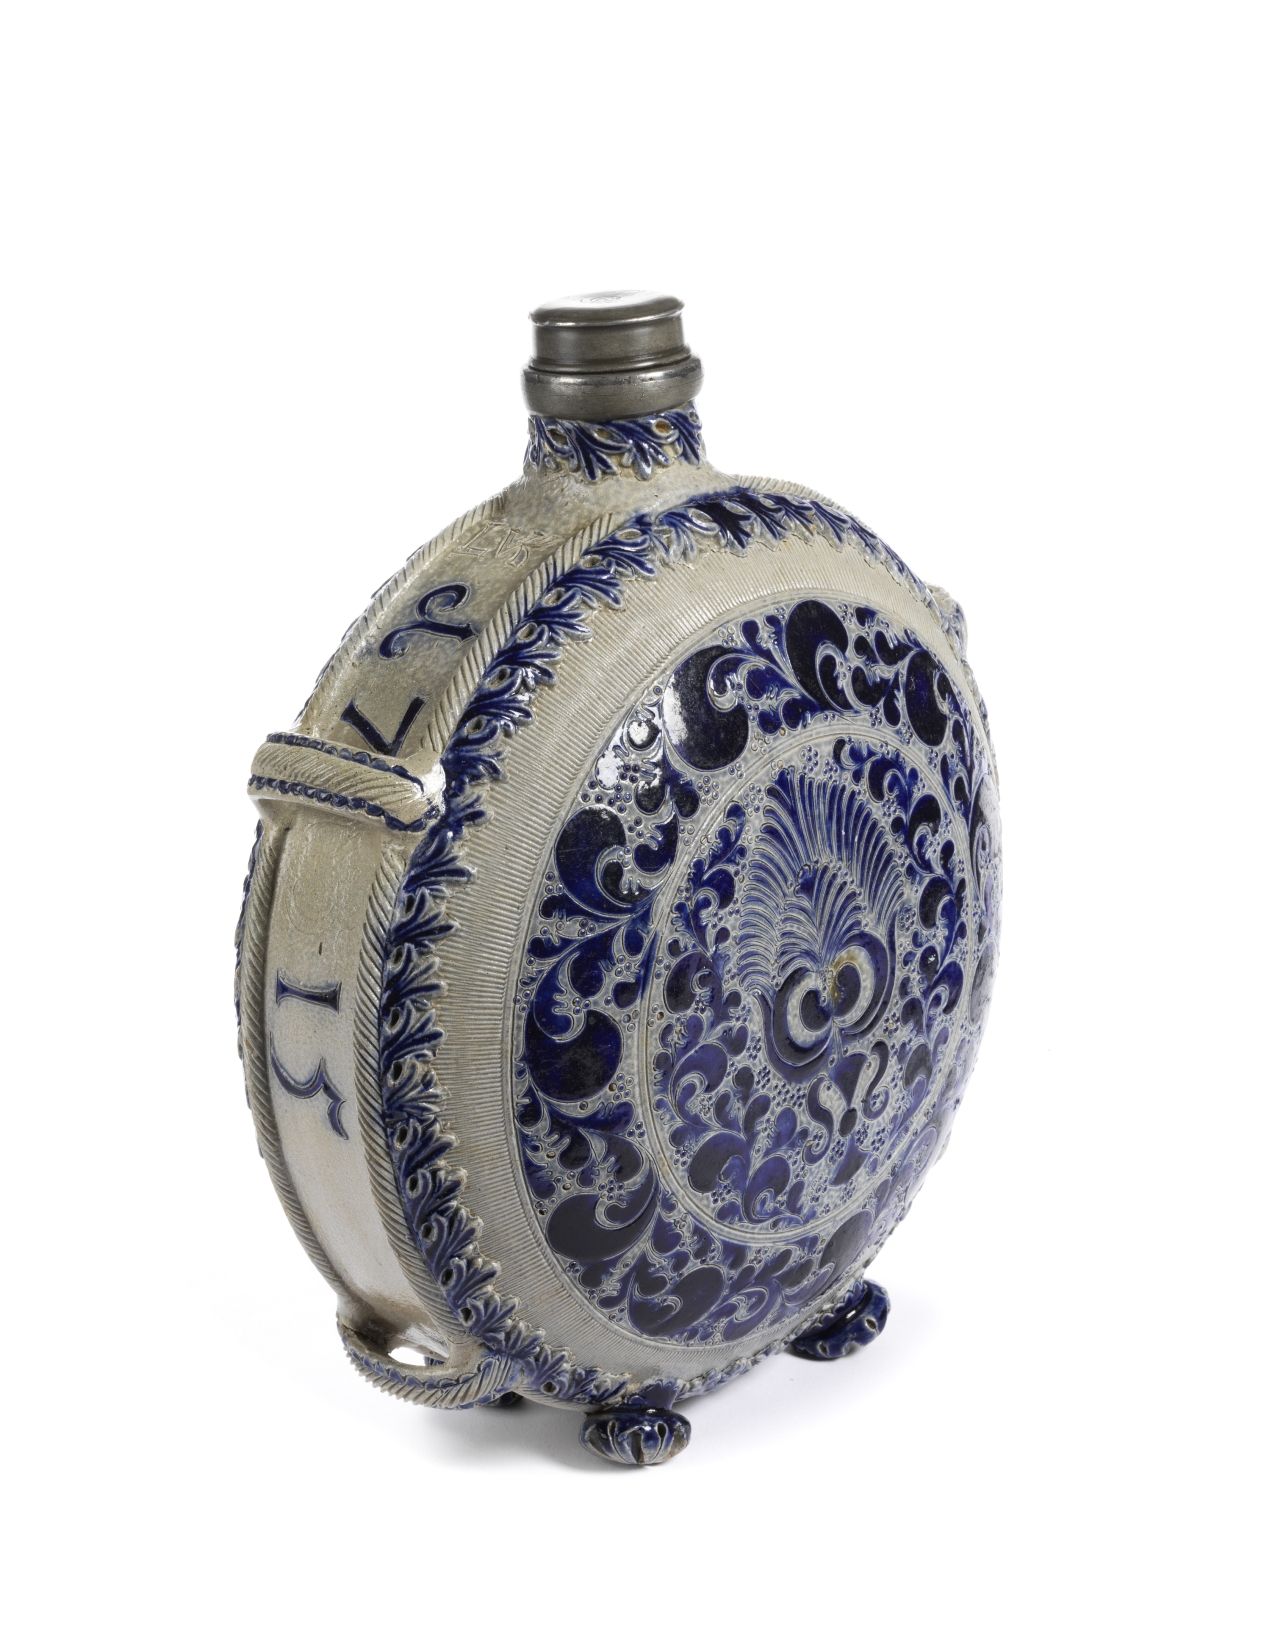 westerwald-stoneware-pilgrims-bottle-dated-1715